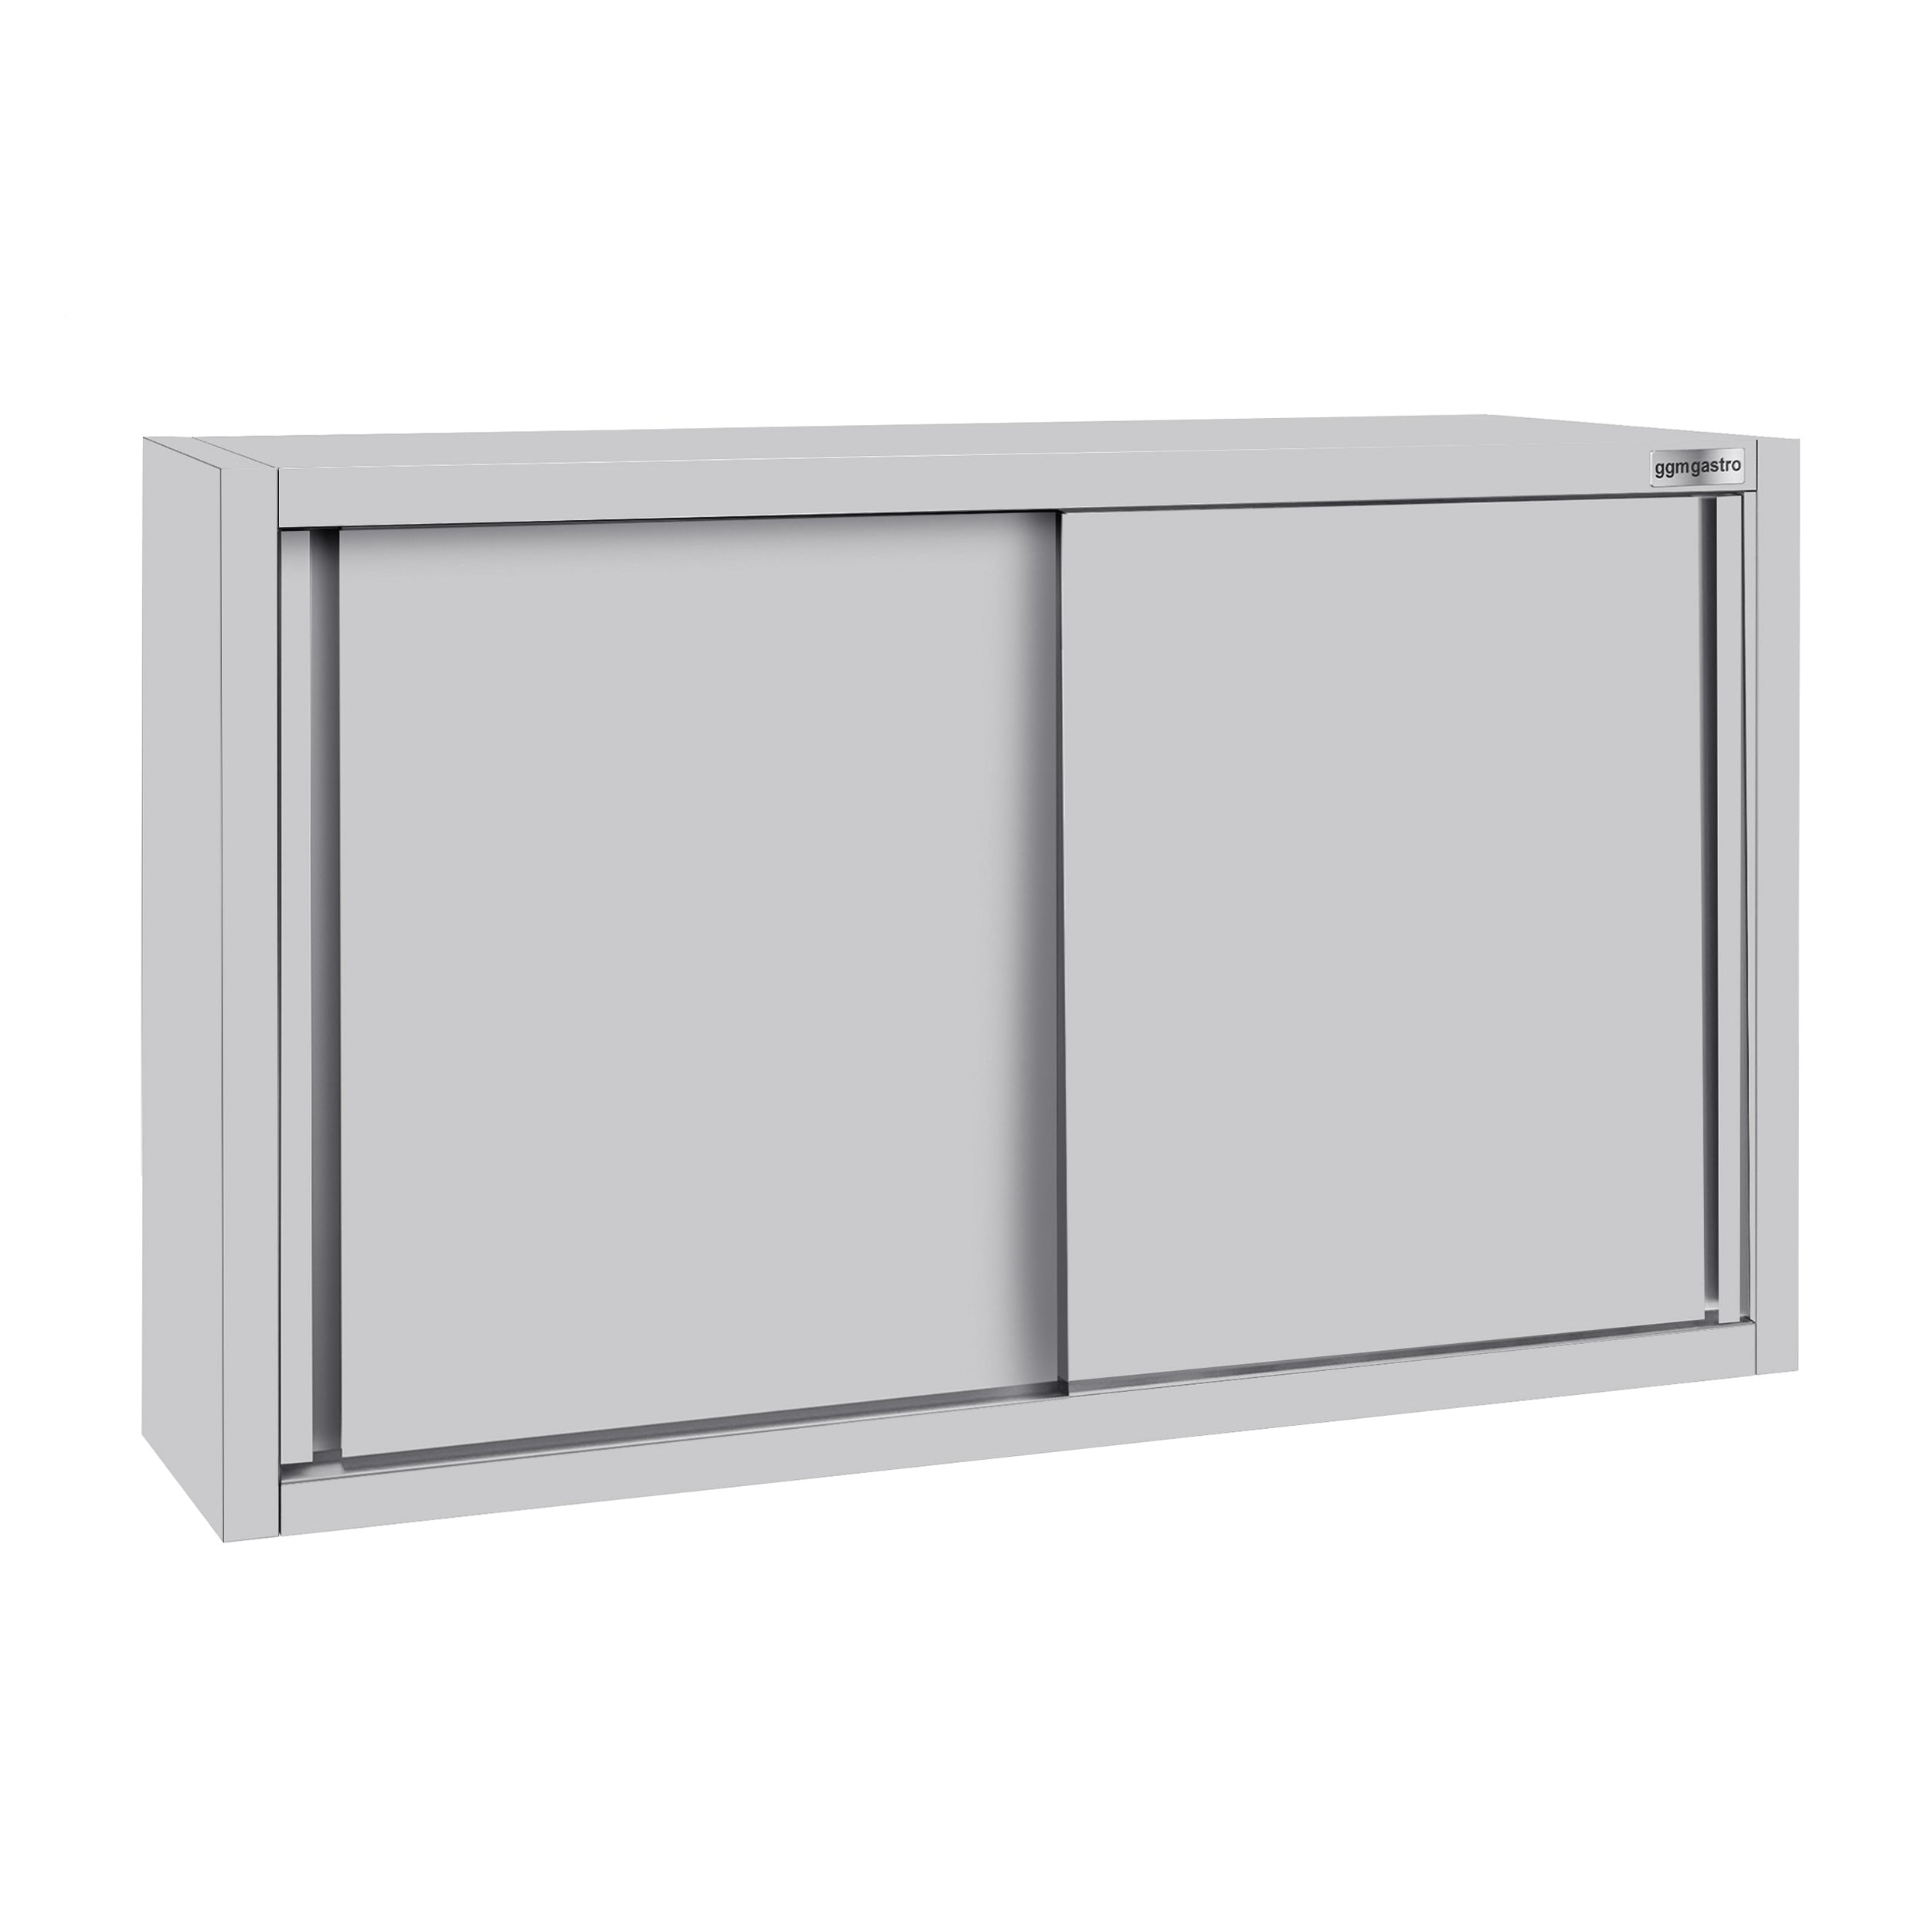 Окачен за стената шкаф ECO - 1,2 м - със сгъваема врата 0,8 м височина